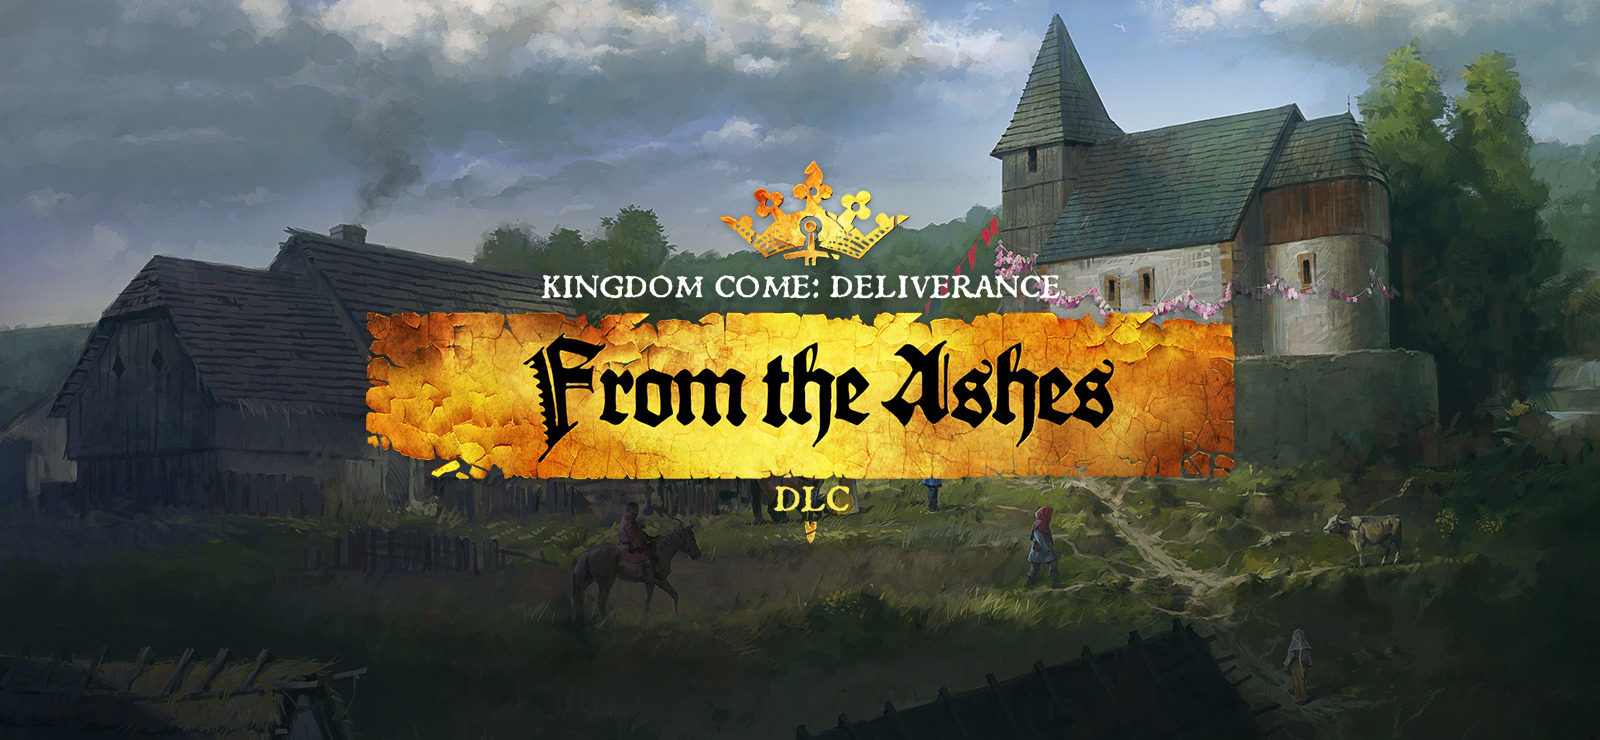 kingdom come deliverance combat arena